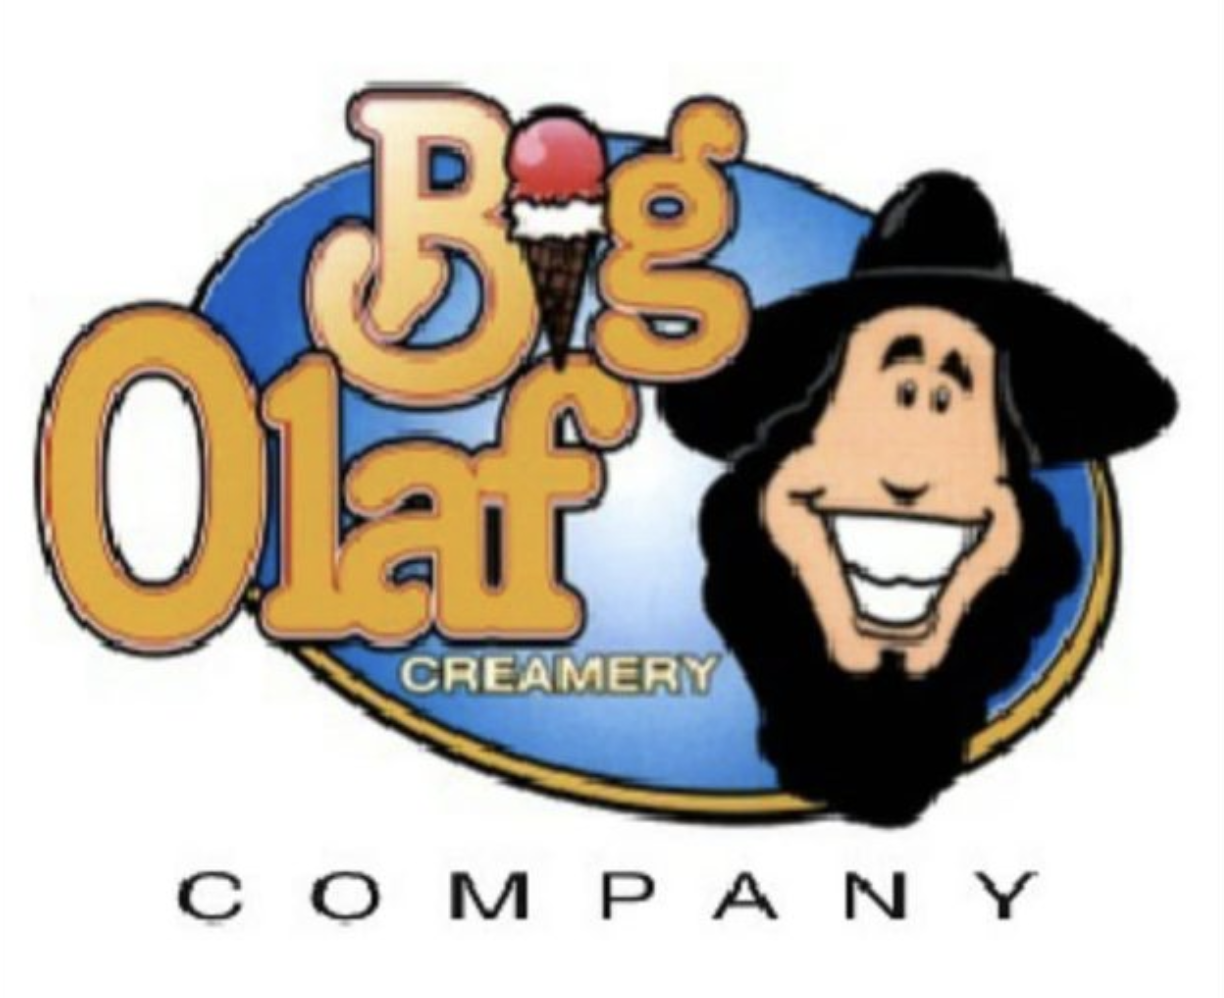 Big Olaf Ice Cream logo